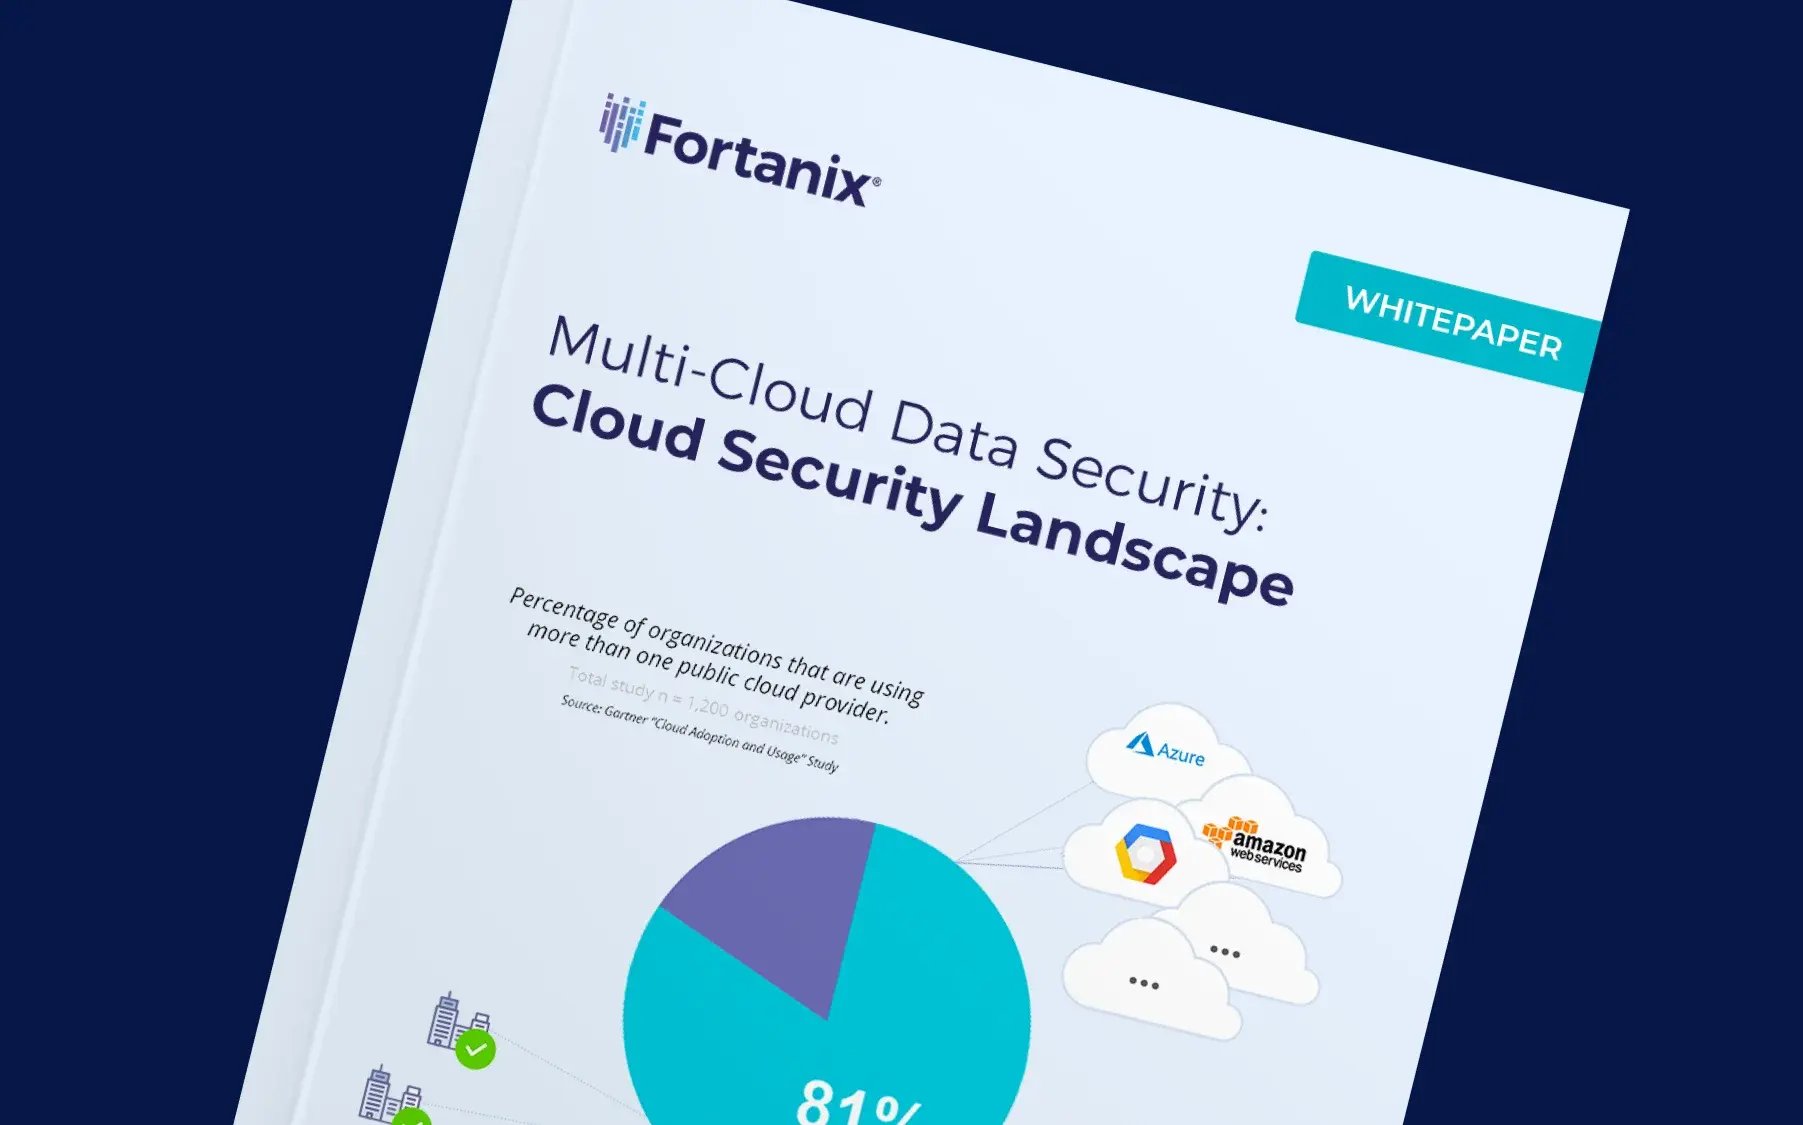 Cloud Security Landscape Multi-Cloud Data Security